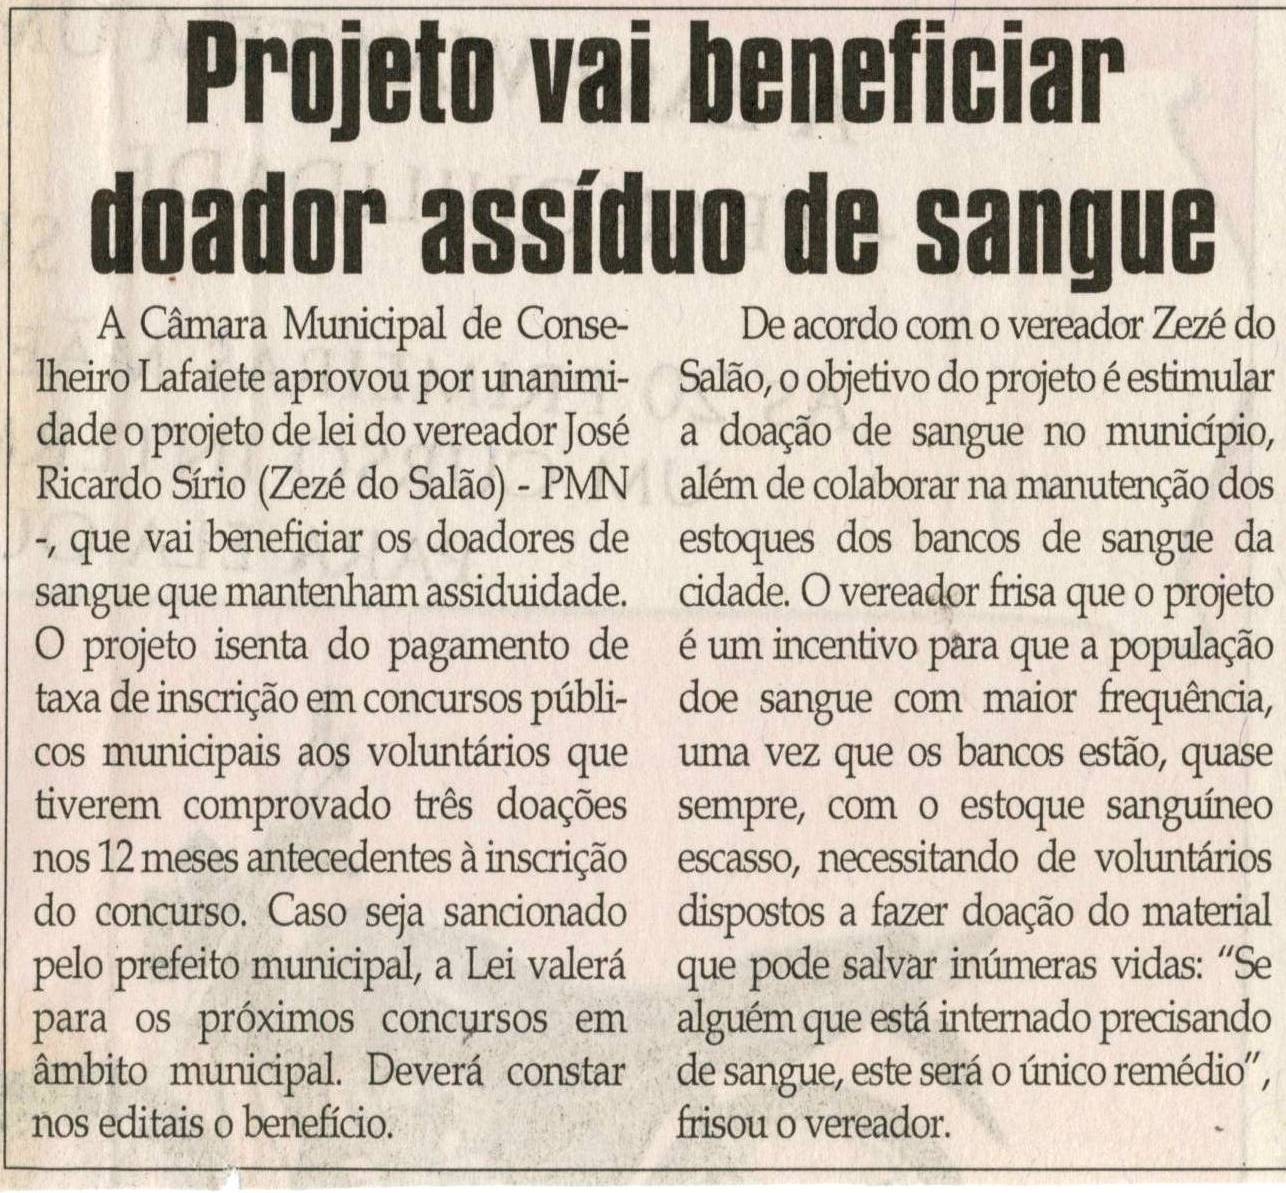 Projeto vai beneficiar doador assíduo de sangue. Jornal Correio da Cidade, Conselheiro Lafaiete, 08 mai. 2010, p. 4.